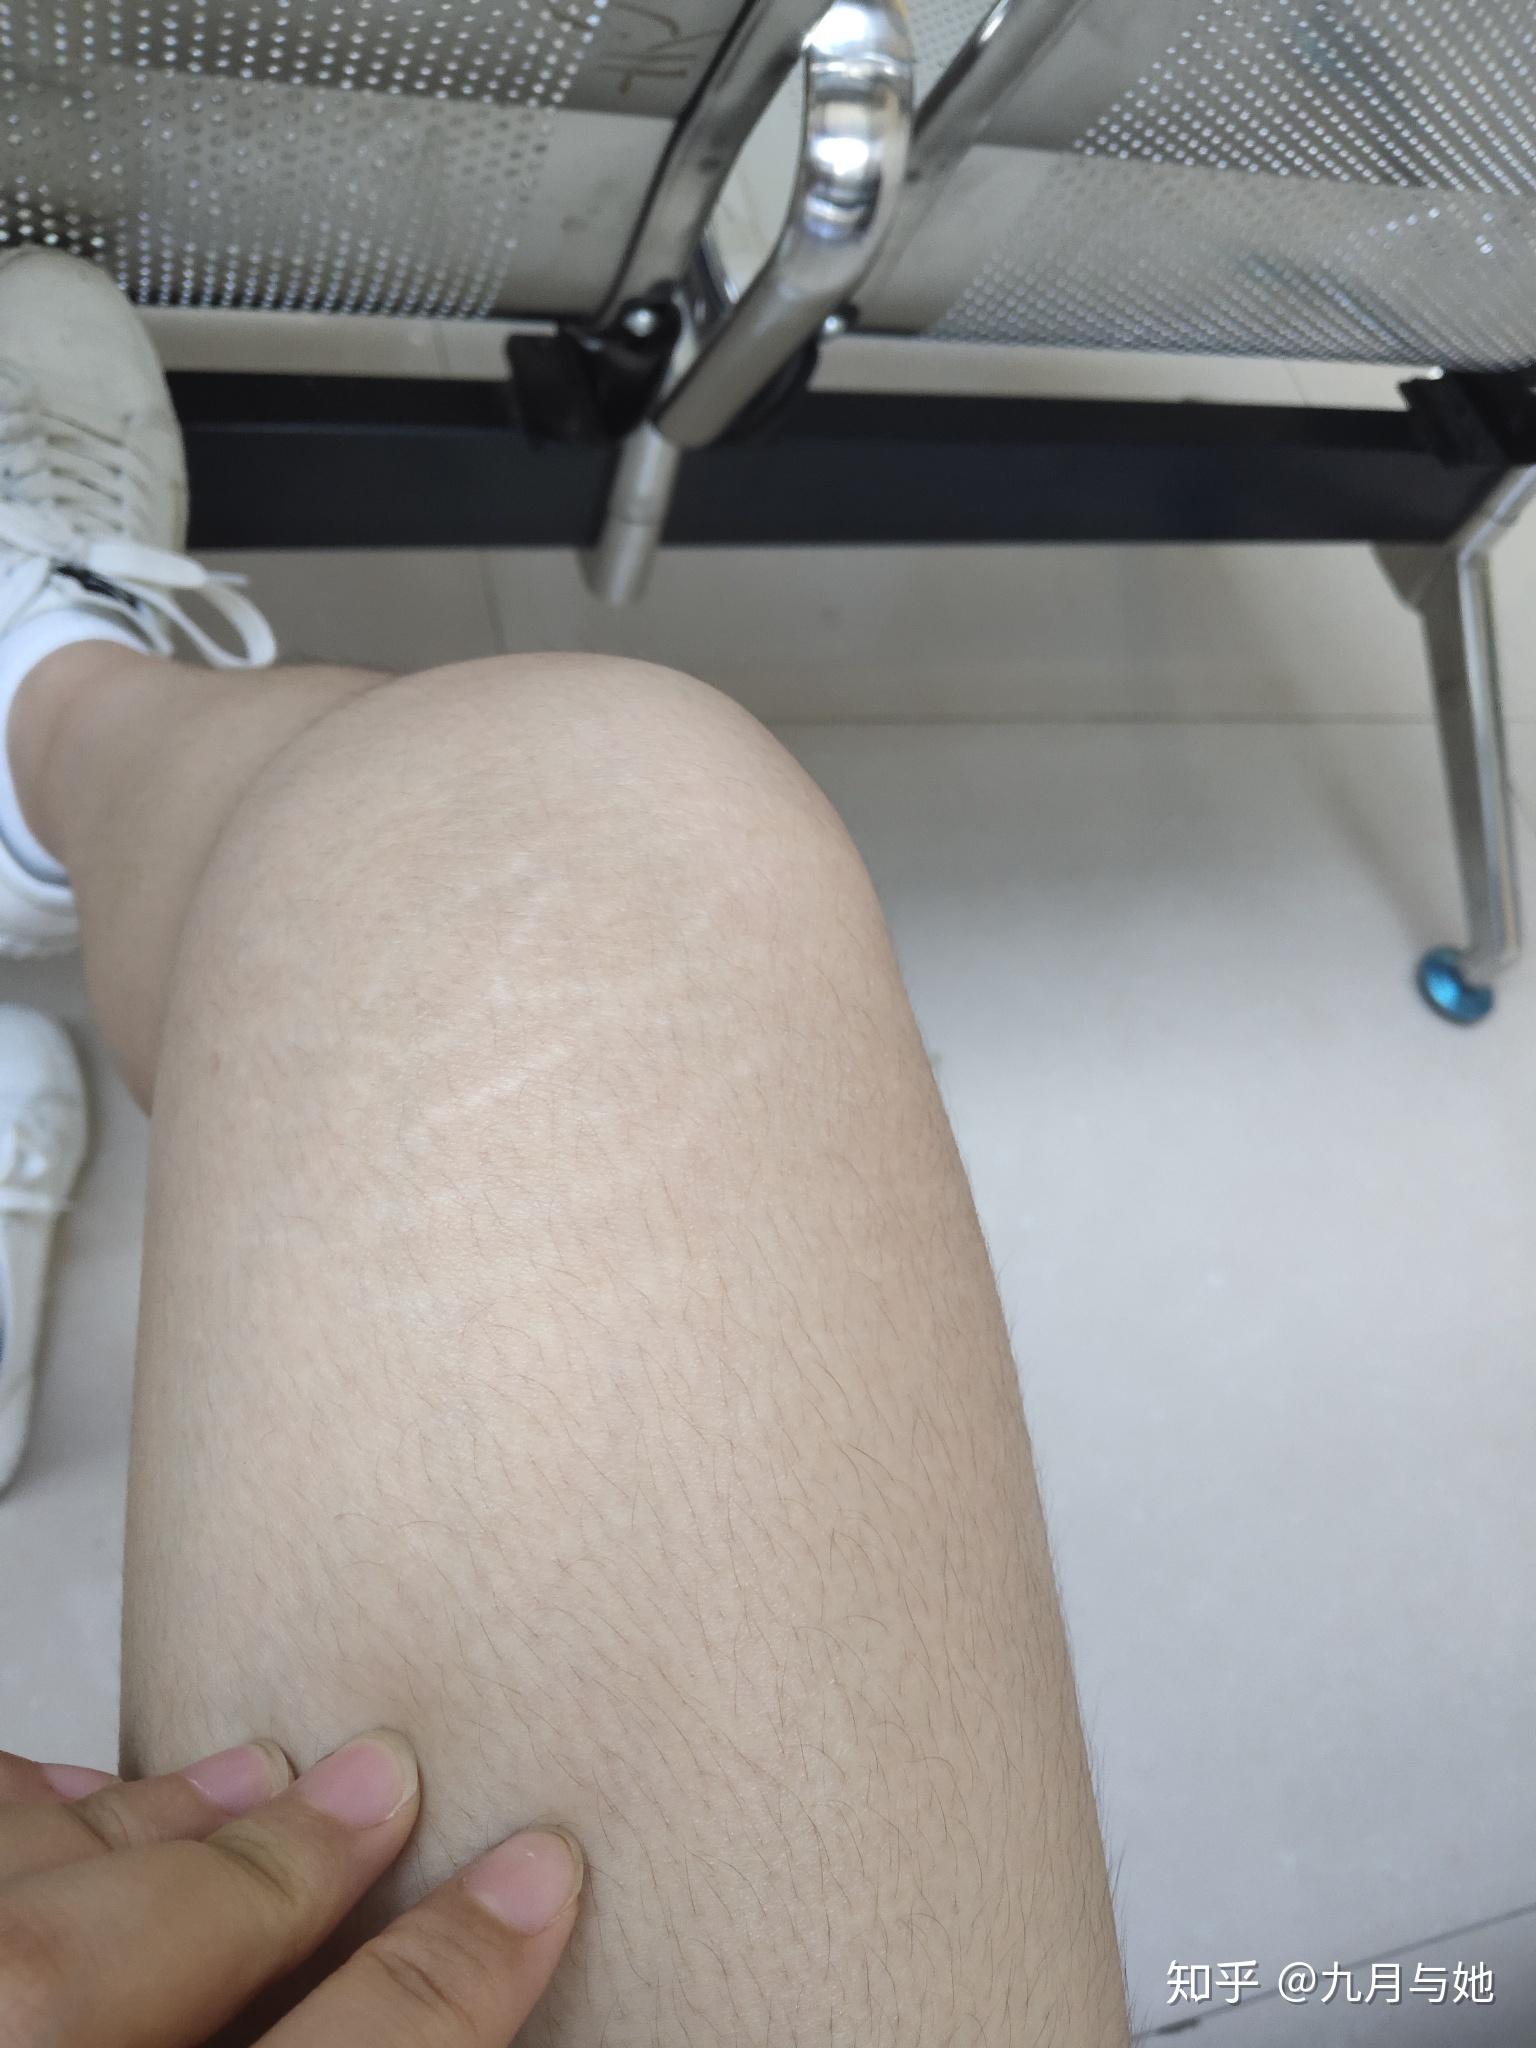 大腿皮肤出现网状花纹图片